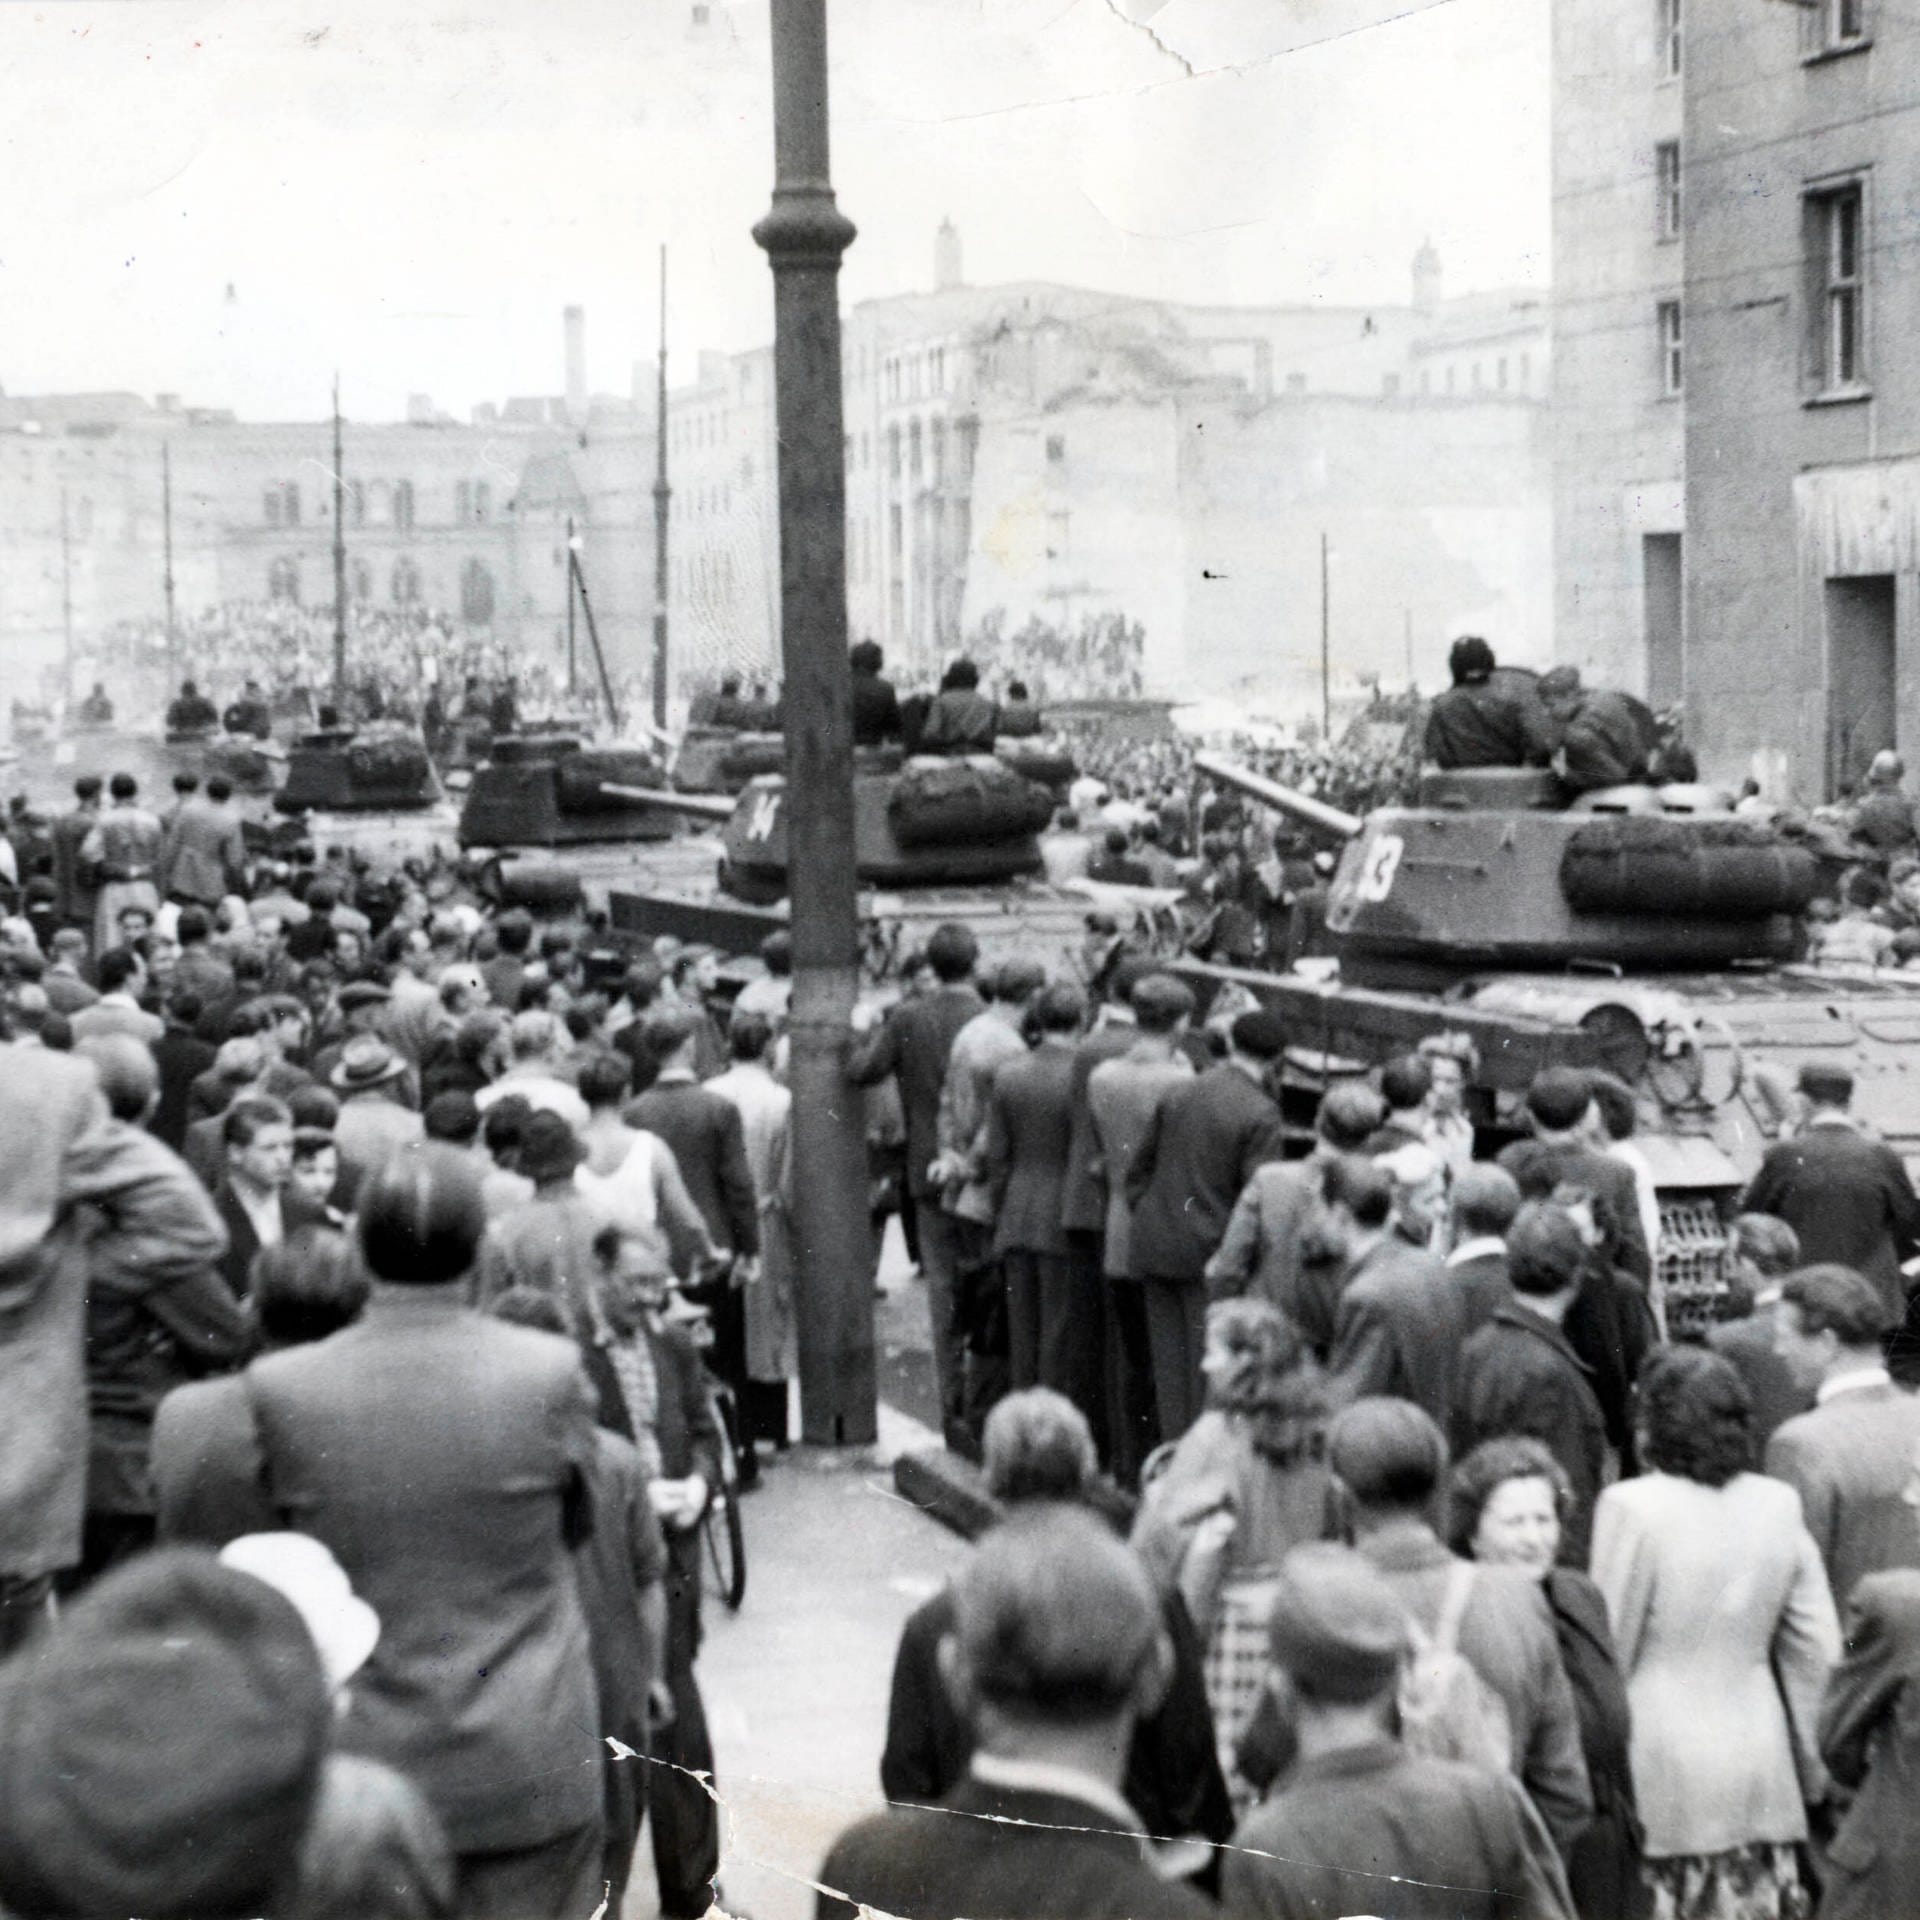 Die DDR am 17. Juni 1953 – Kurzer Tag des Widerstands | Archivradio-Gespräch